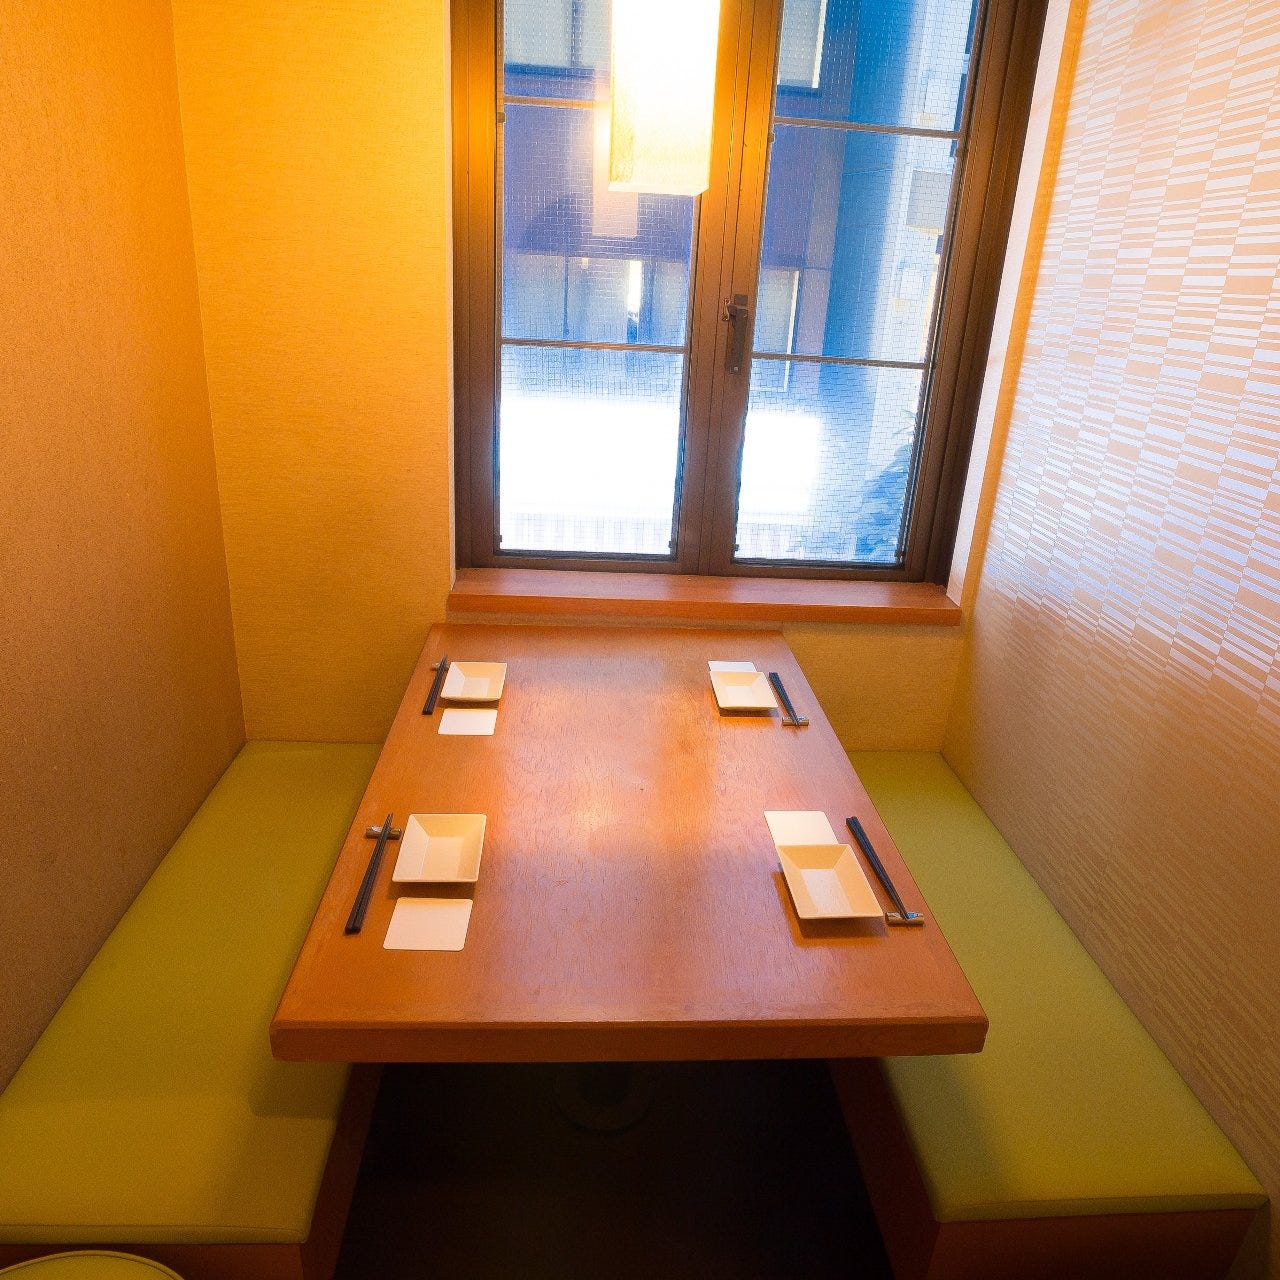 22年 最新グルメ 蒲田にあるオシャレで人気のあるお店 レストラン カフェ 居酒屋のネット予約 東京版